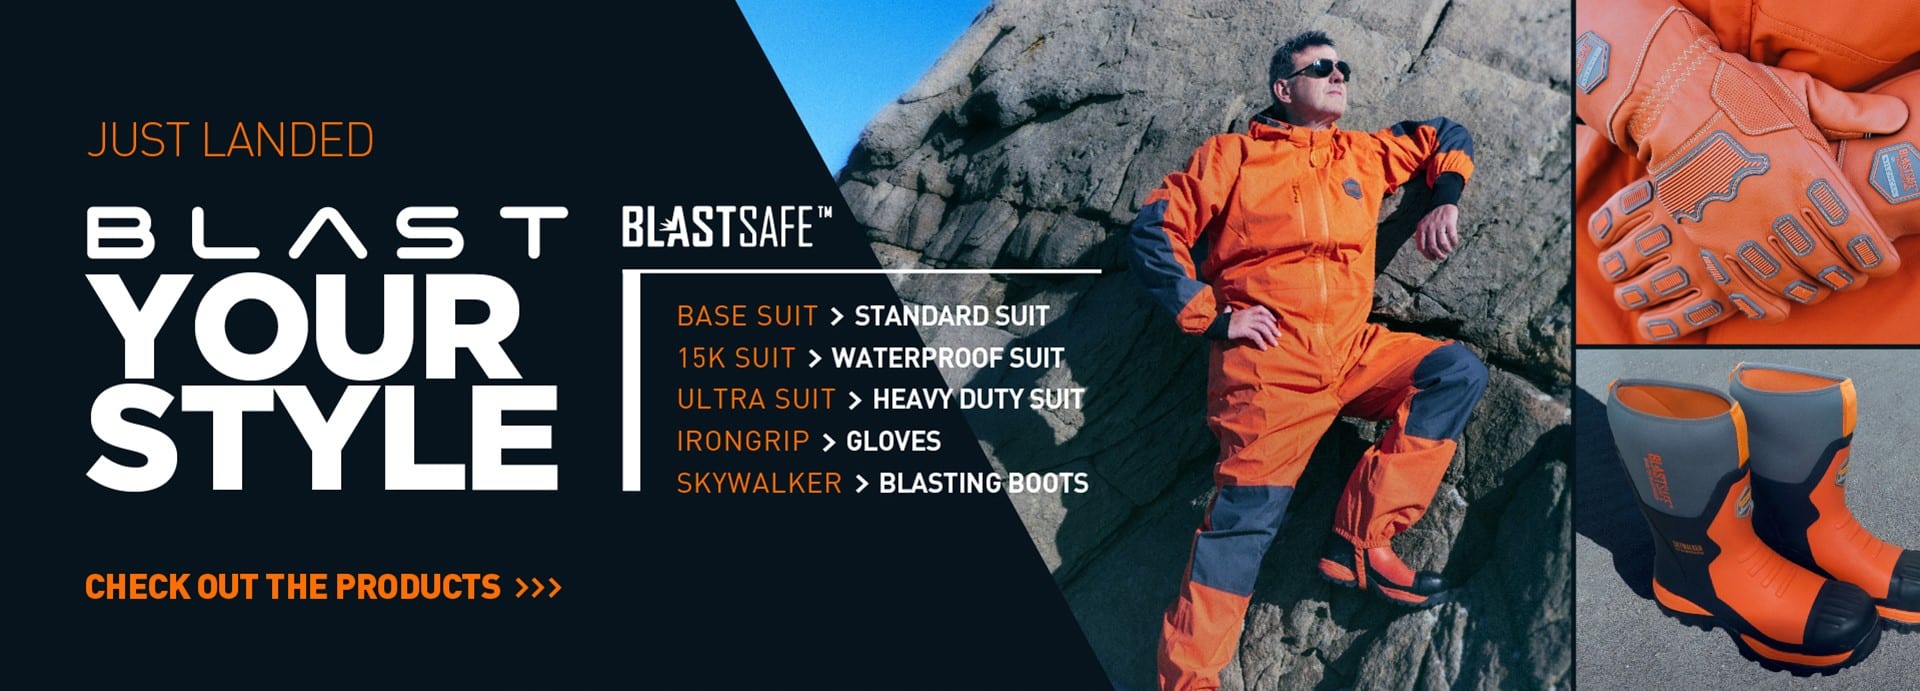 Blast Suits, Airblast, Silencer, Blastsafe